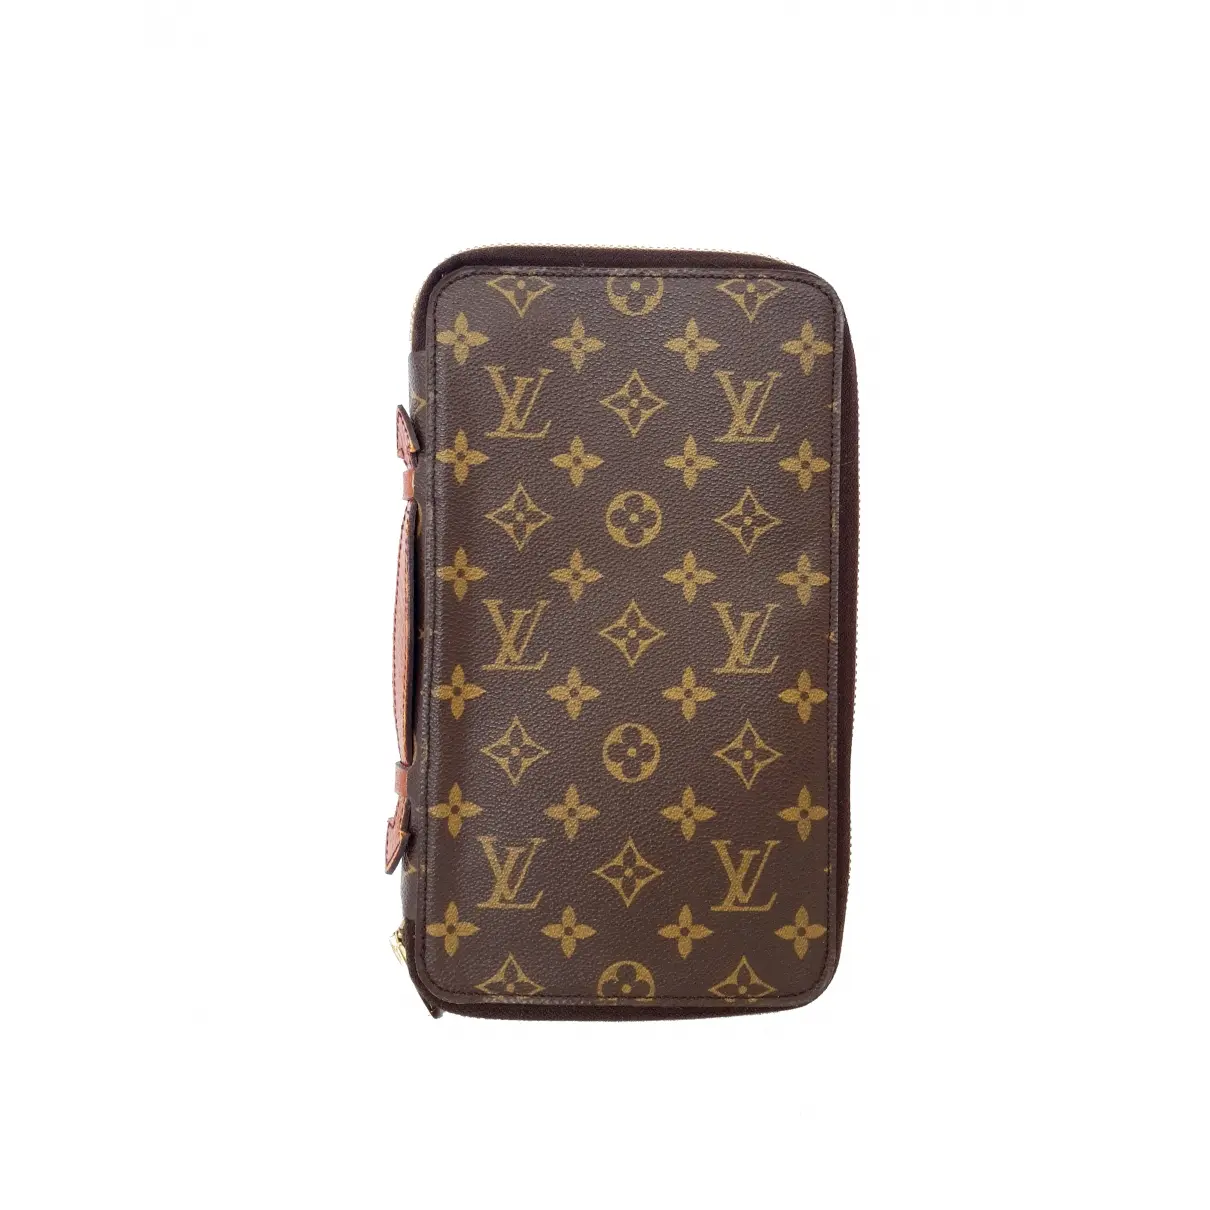 Buy Louis Vuitton Cloth purse online - Vintage